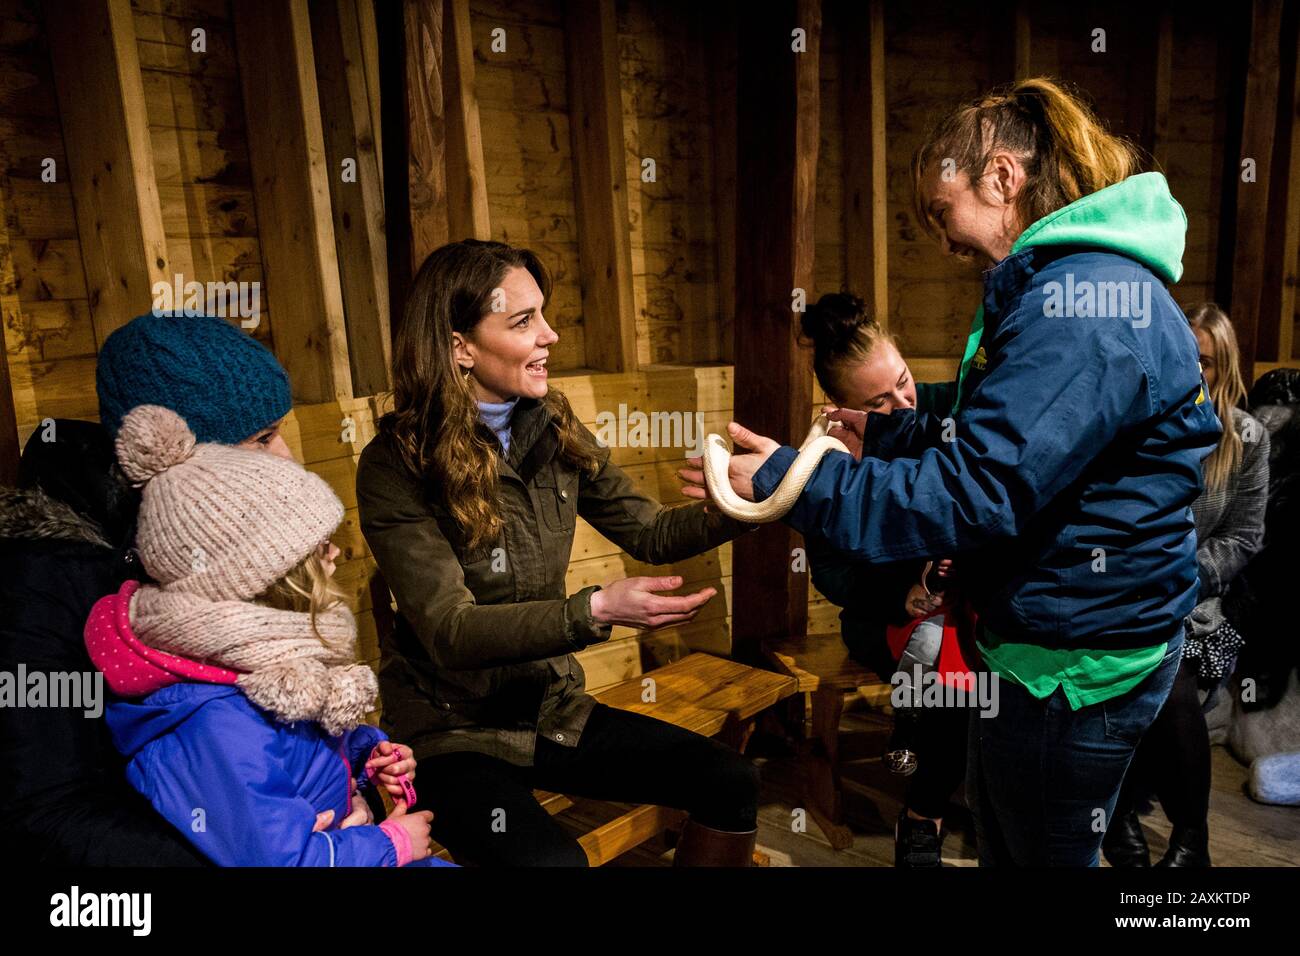 Der Herzogin von Cambridge wird eine Maisschlange namens Sophie während eines Besuchs der Ark Open Farm in Newtownards in der Nähe von Belfast übergeben, wo sie sich mit Eltern und Großeltern traf, um ihre Erfahrungen mit der Erziehung von Kleinkindern für ihre Frühkindliche Umfrage zu besprechen. PA Foto. Bilddatum: Mittwoch, 12. Februar 2020. Siehe PA Story ROYAL Kate. Der Lichtbildkredit sollte lauten: Liam McBurney/PA Wire Stockfoto